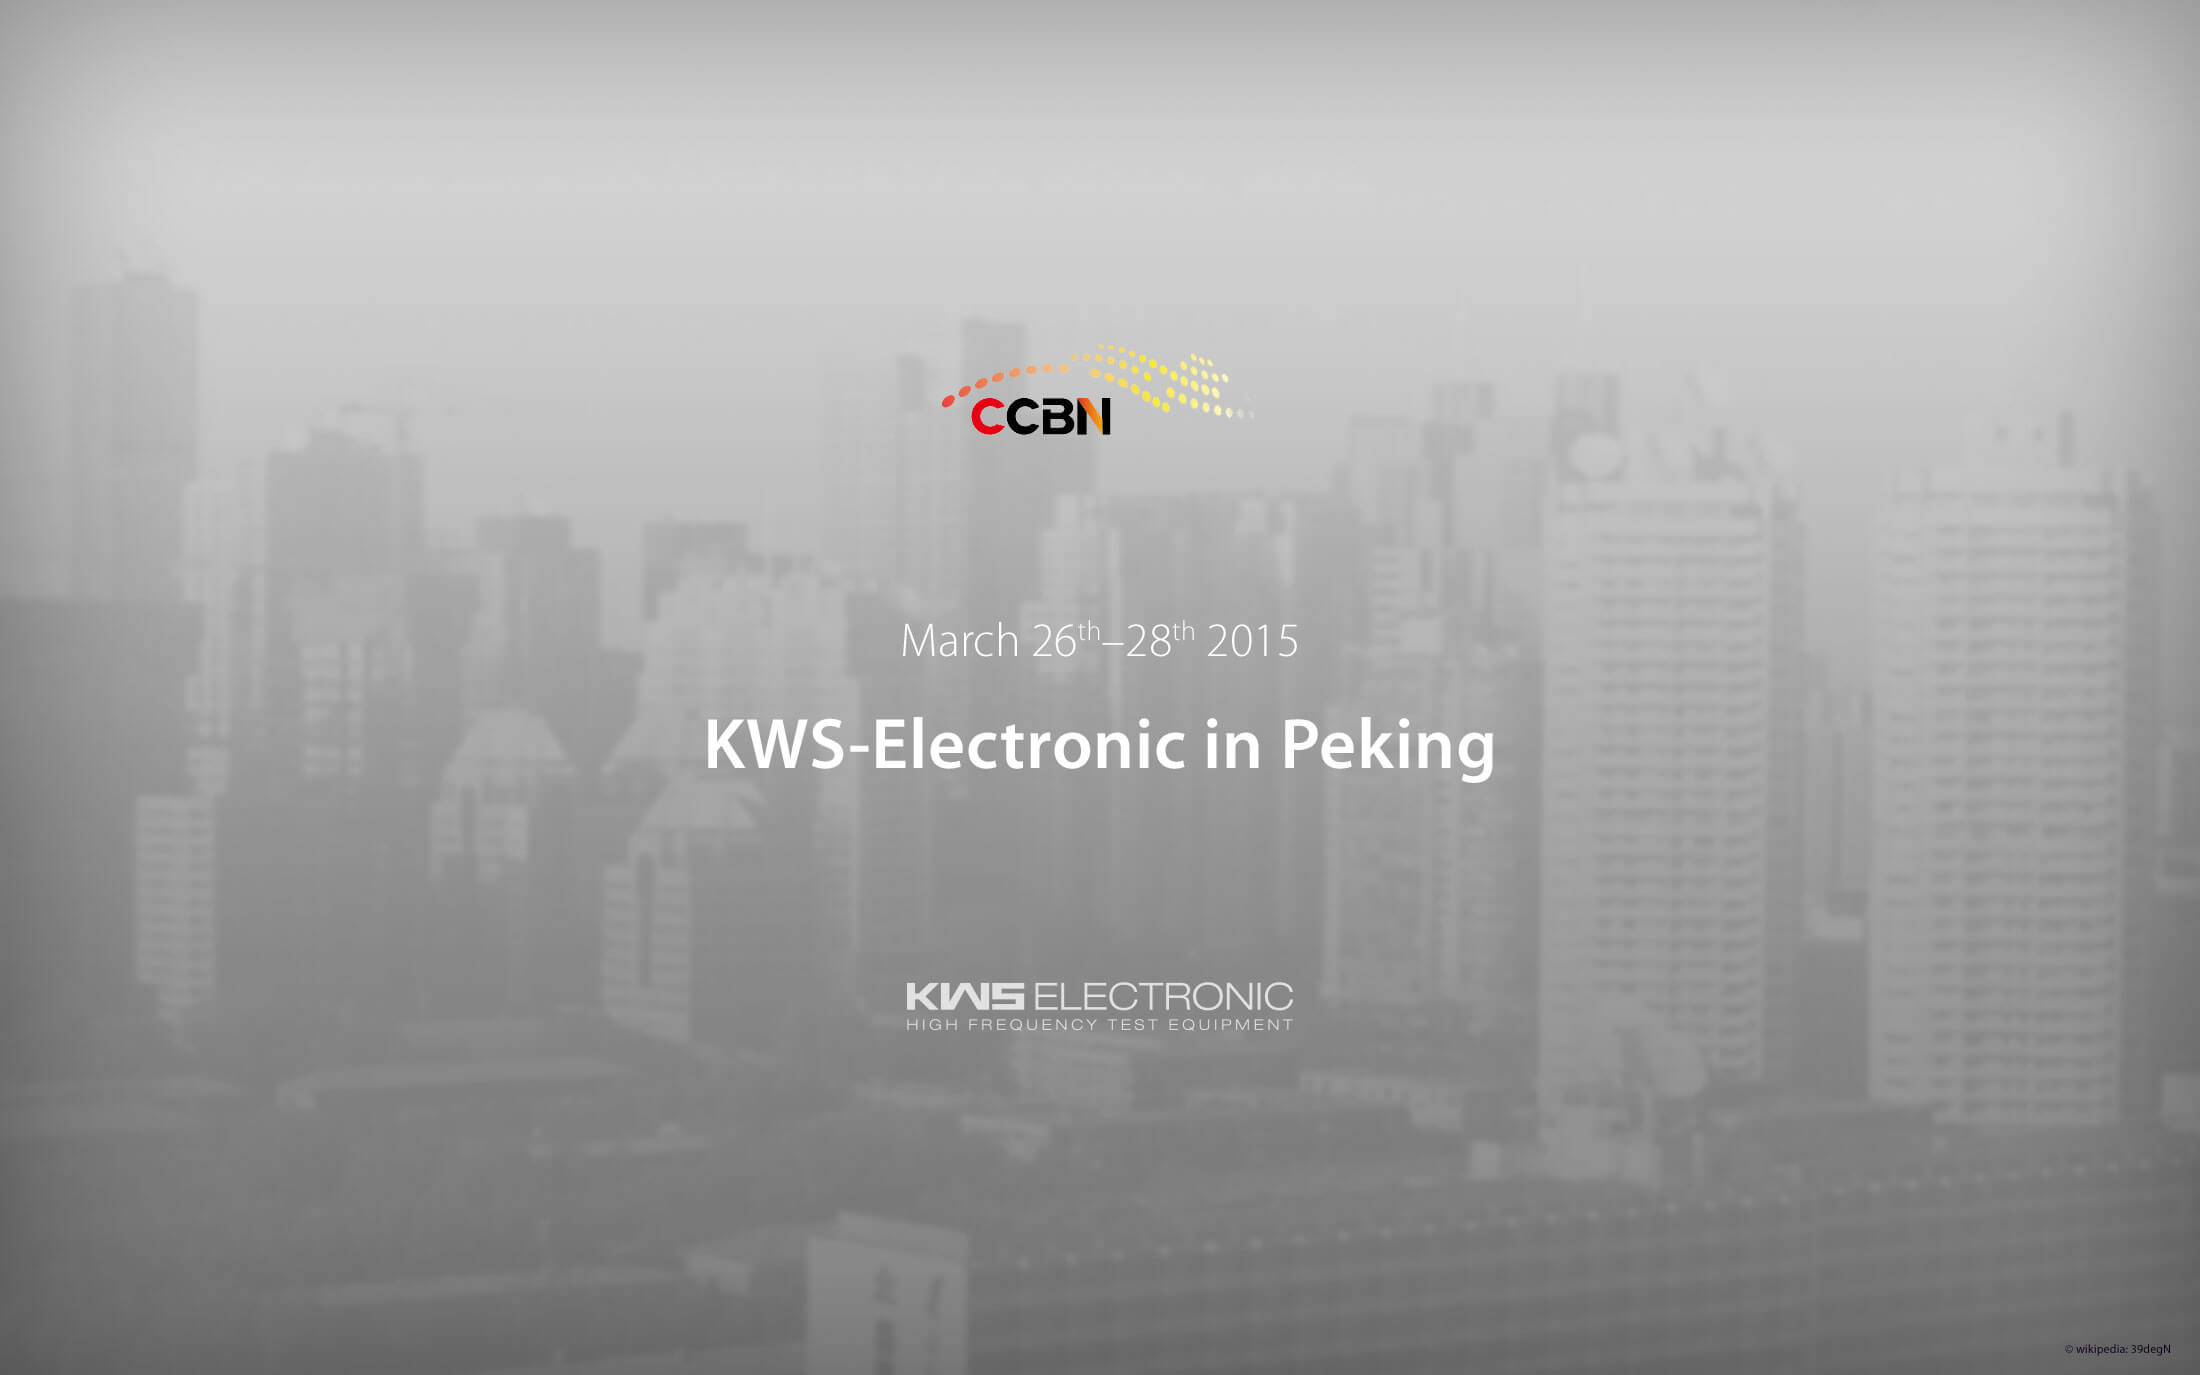 KWS-Electronic at CCBN 2015 in Peking